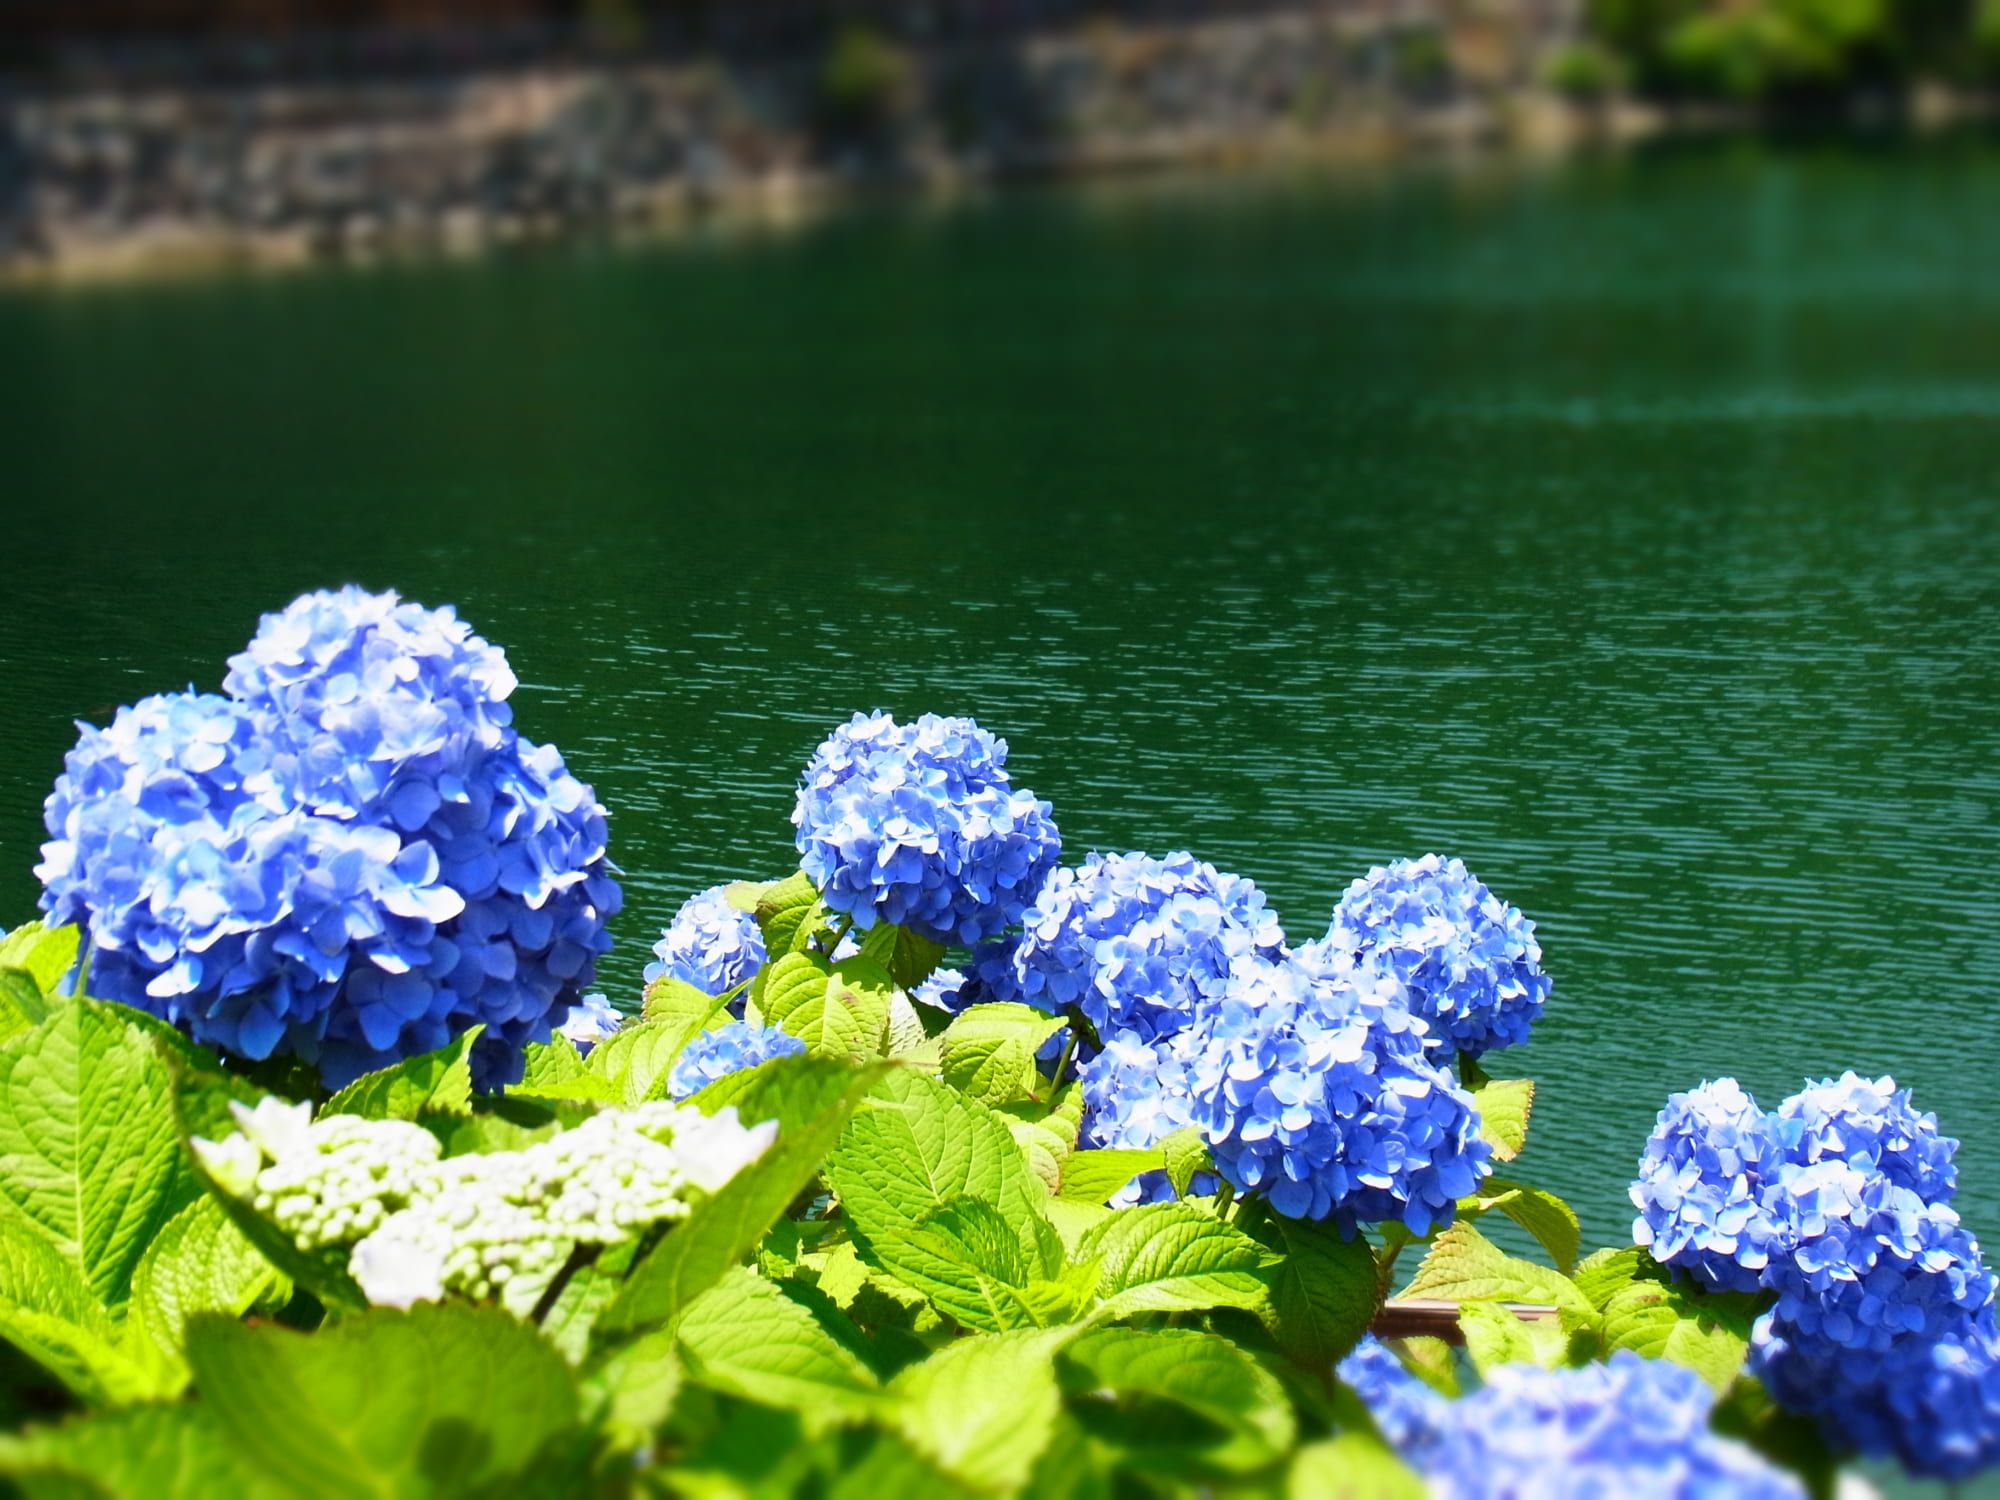 Địa điểm ngắm hoa cẩm tú cầu đẹp ở Kanagawa: Kanagawa là một trong những điểm đến tuyệt vời để chiêm ngưỡng hoa cẩm tú cầu đẹp tuyệt trần. Các công viên và vườn hoa ở đây rất đẹp và được trang trí rực rỡ trong mùa hoa cẩm tú cầu. Bạn không nên bỏ lỡ cơ hội trải nghiệm những khoảnh khắc đẹp nhất của mùa hoa này tại Kanagawa.